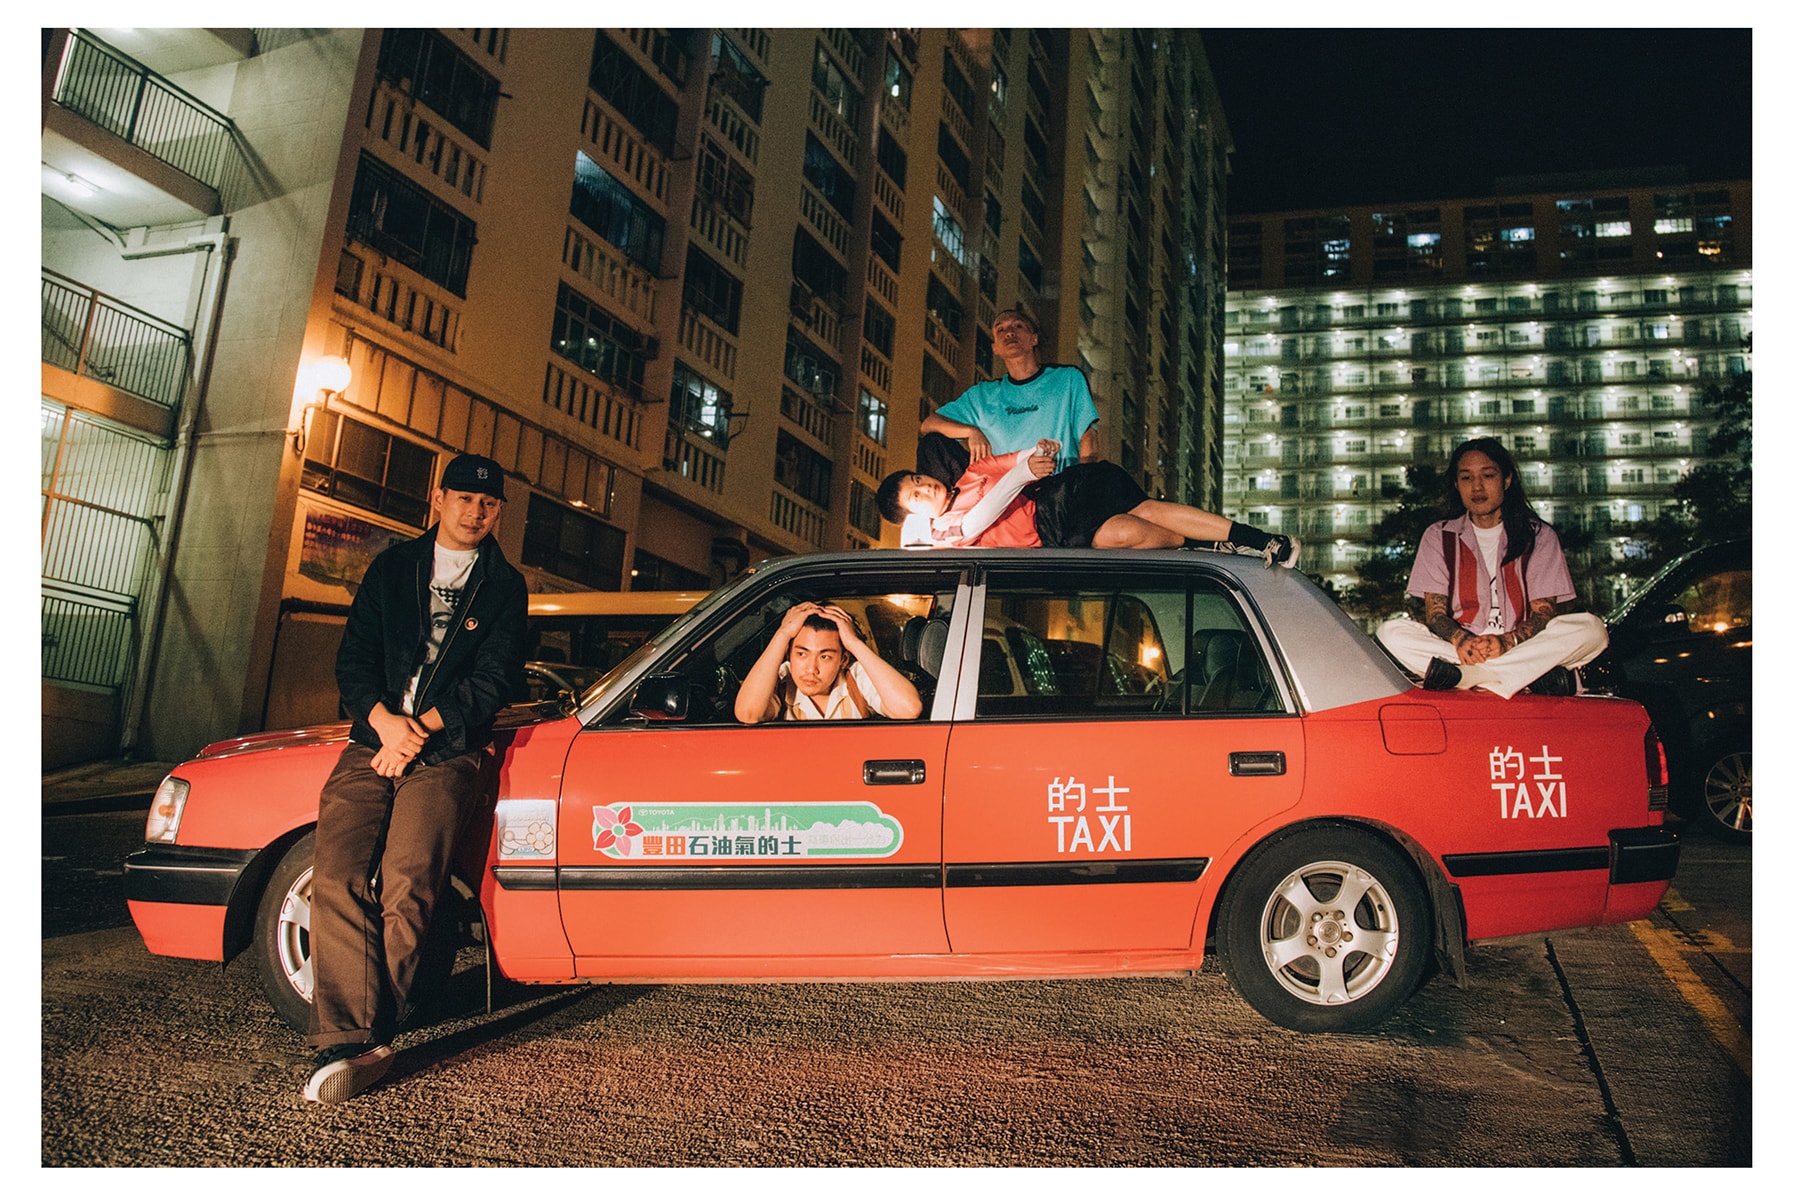 香港発 ビクトリア グルズ スケートレーベル Victoria 2019年 春夏 コレクション エディトリアル “Taxi” が到着